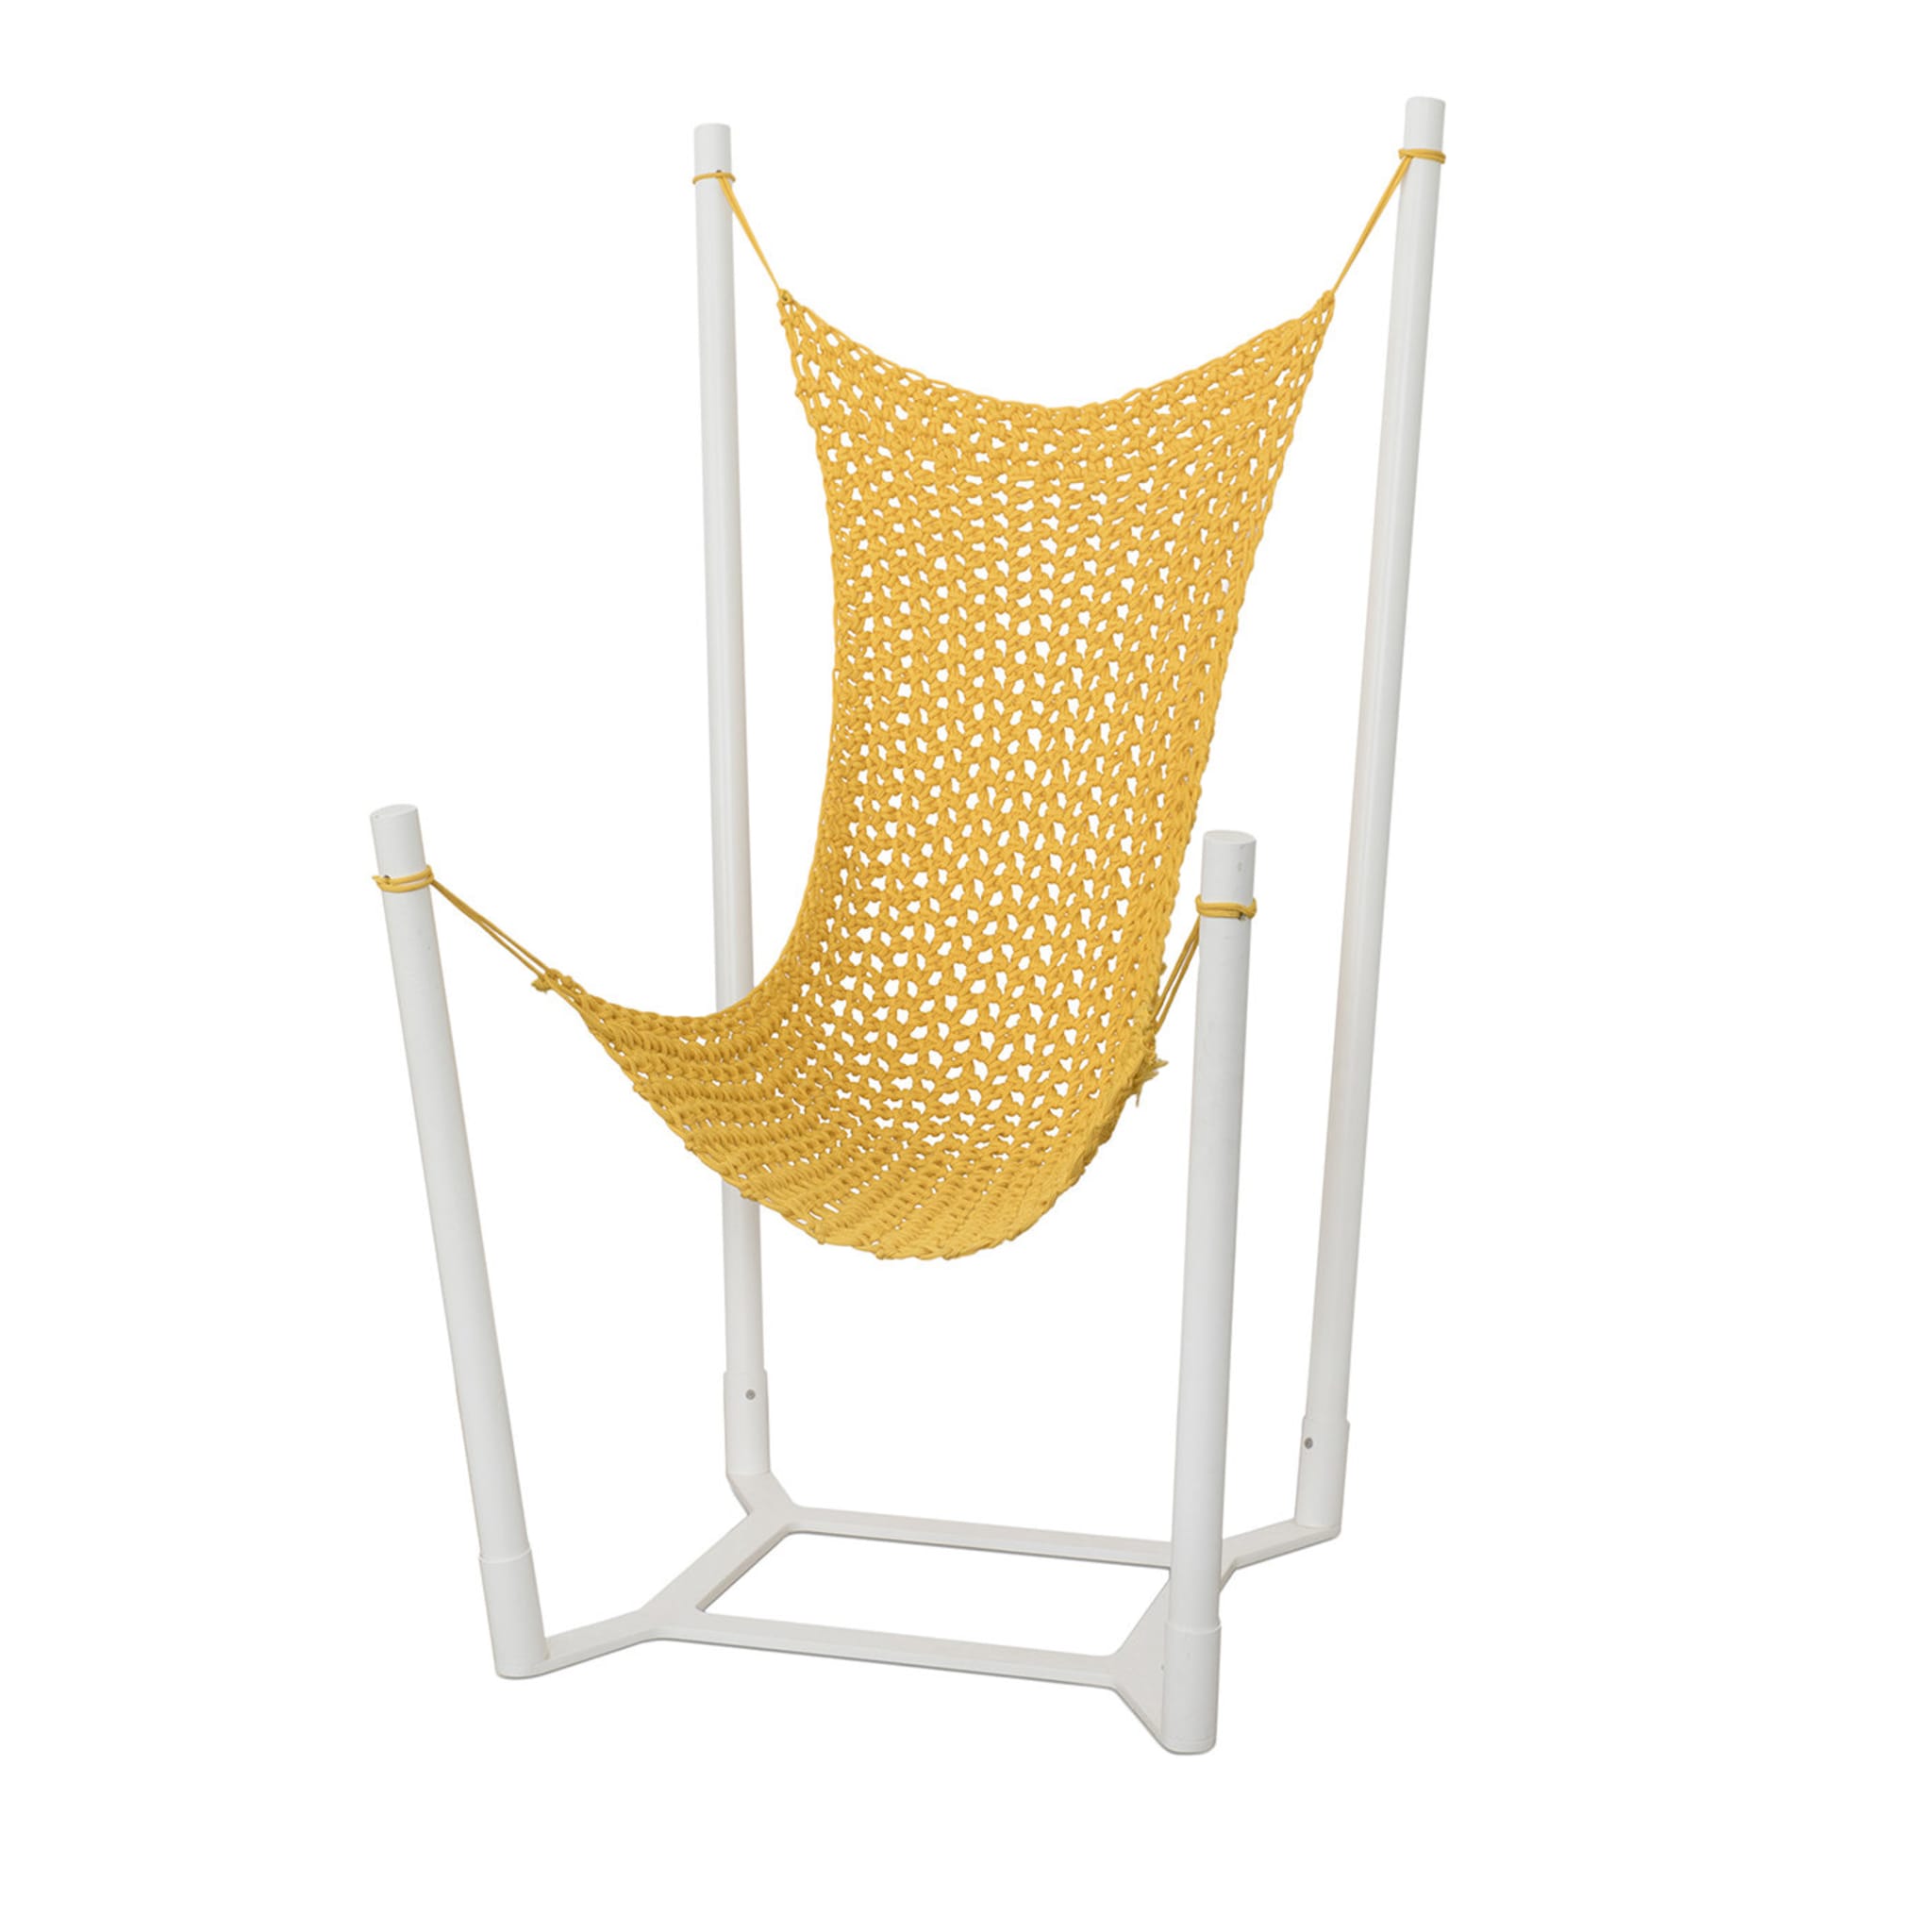 Allegra Yellow Hammock Chair - Main view